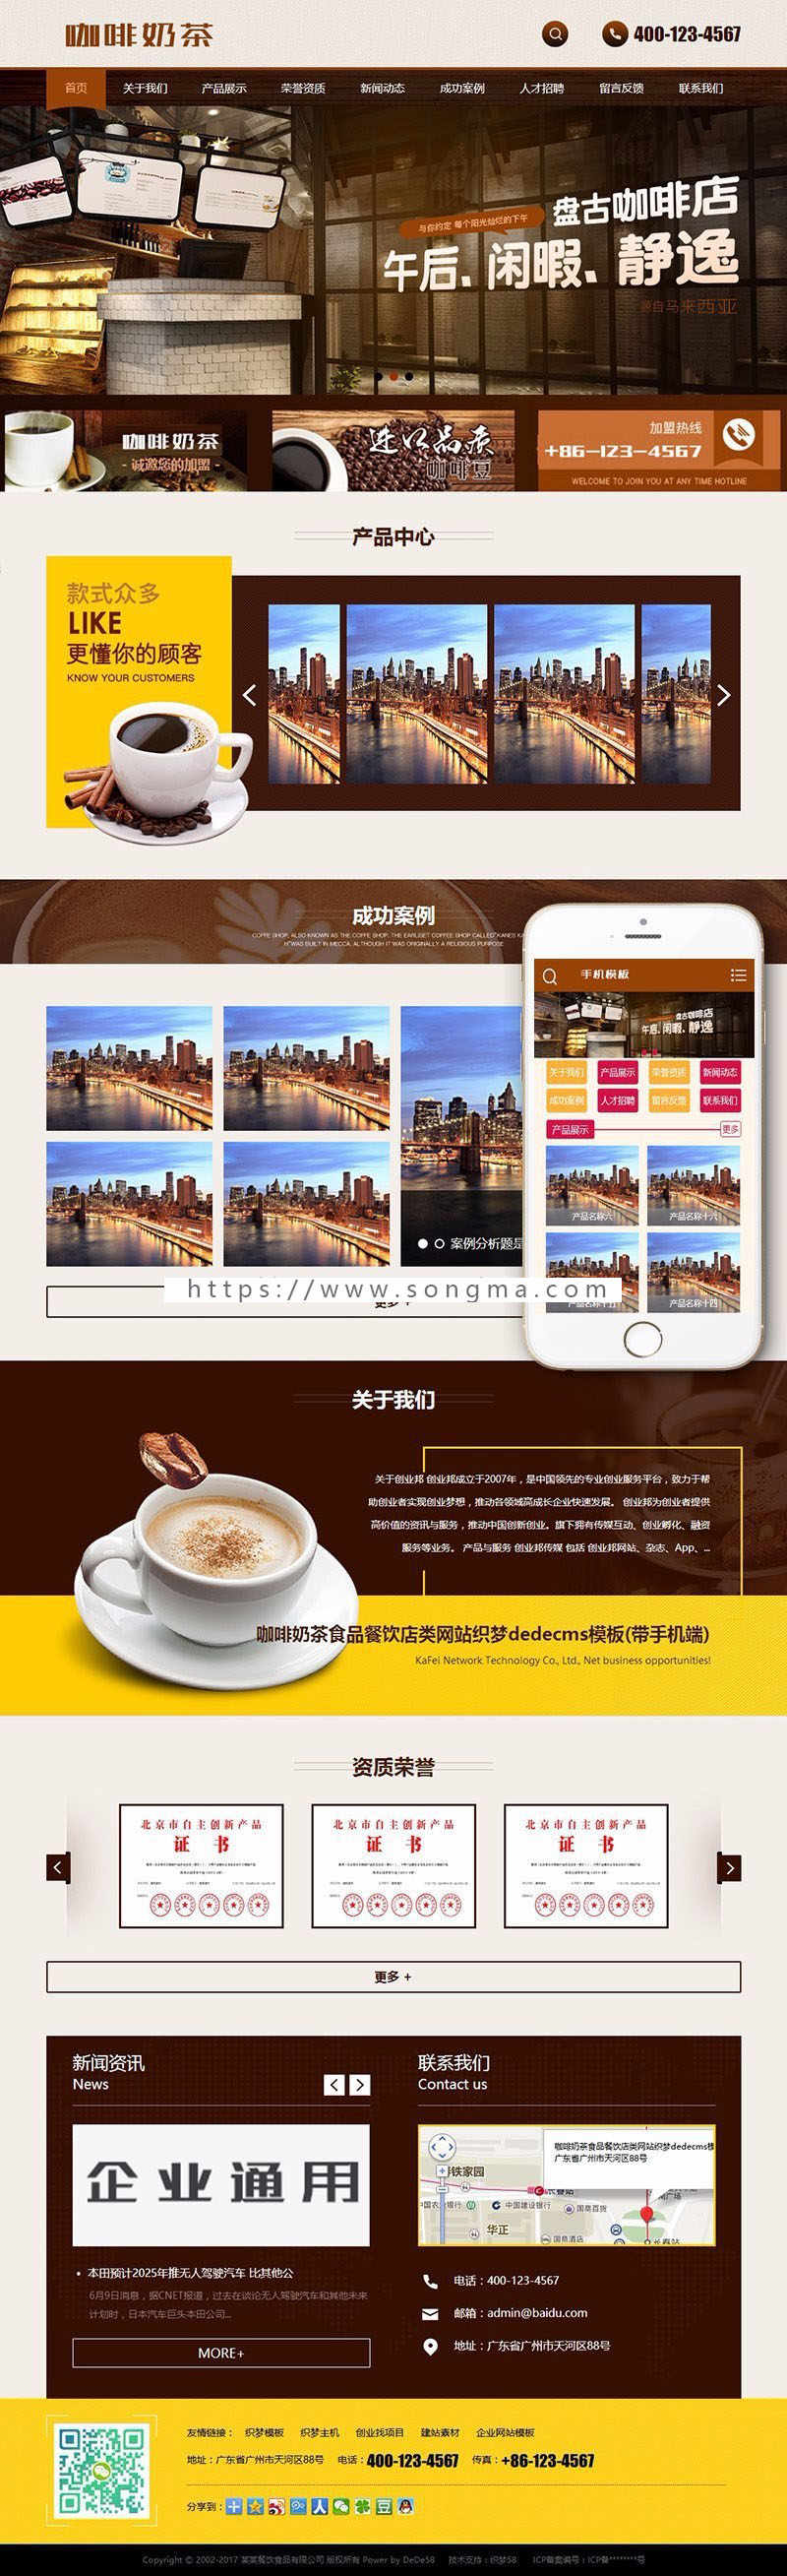 咖啡奶茶食品餐饮店类网站织梦dedecms模板带手机端